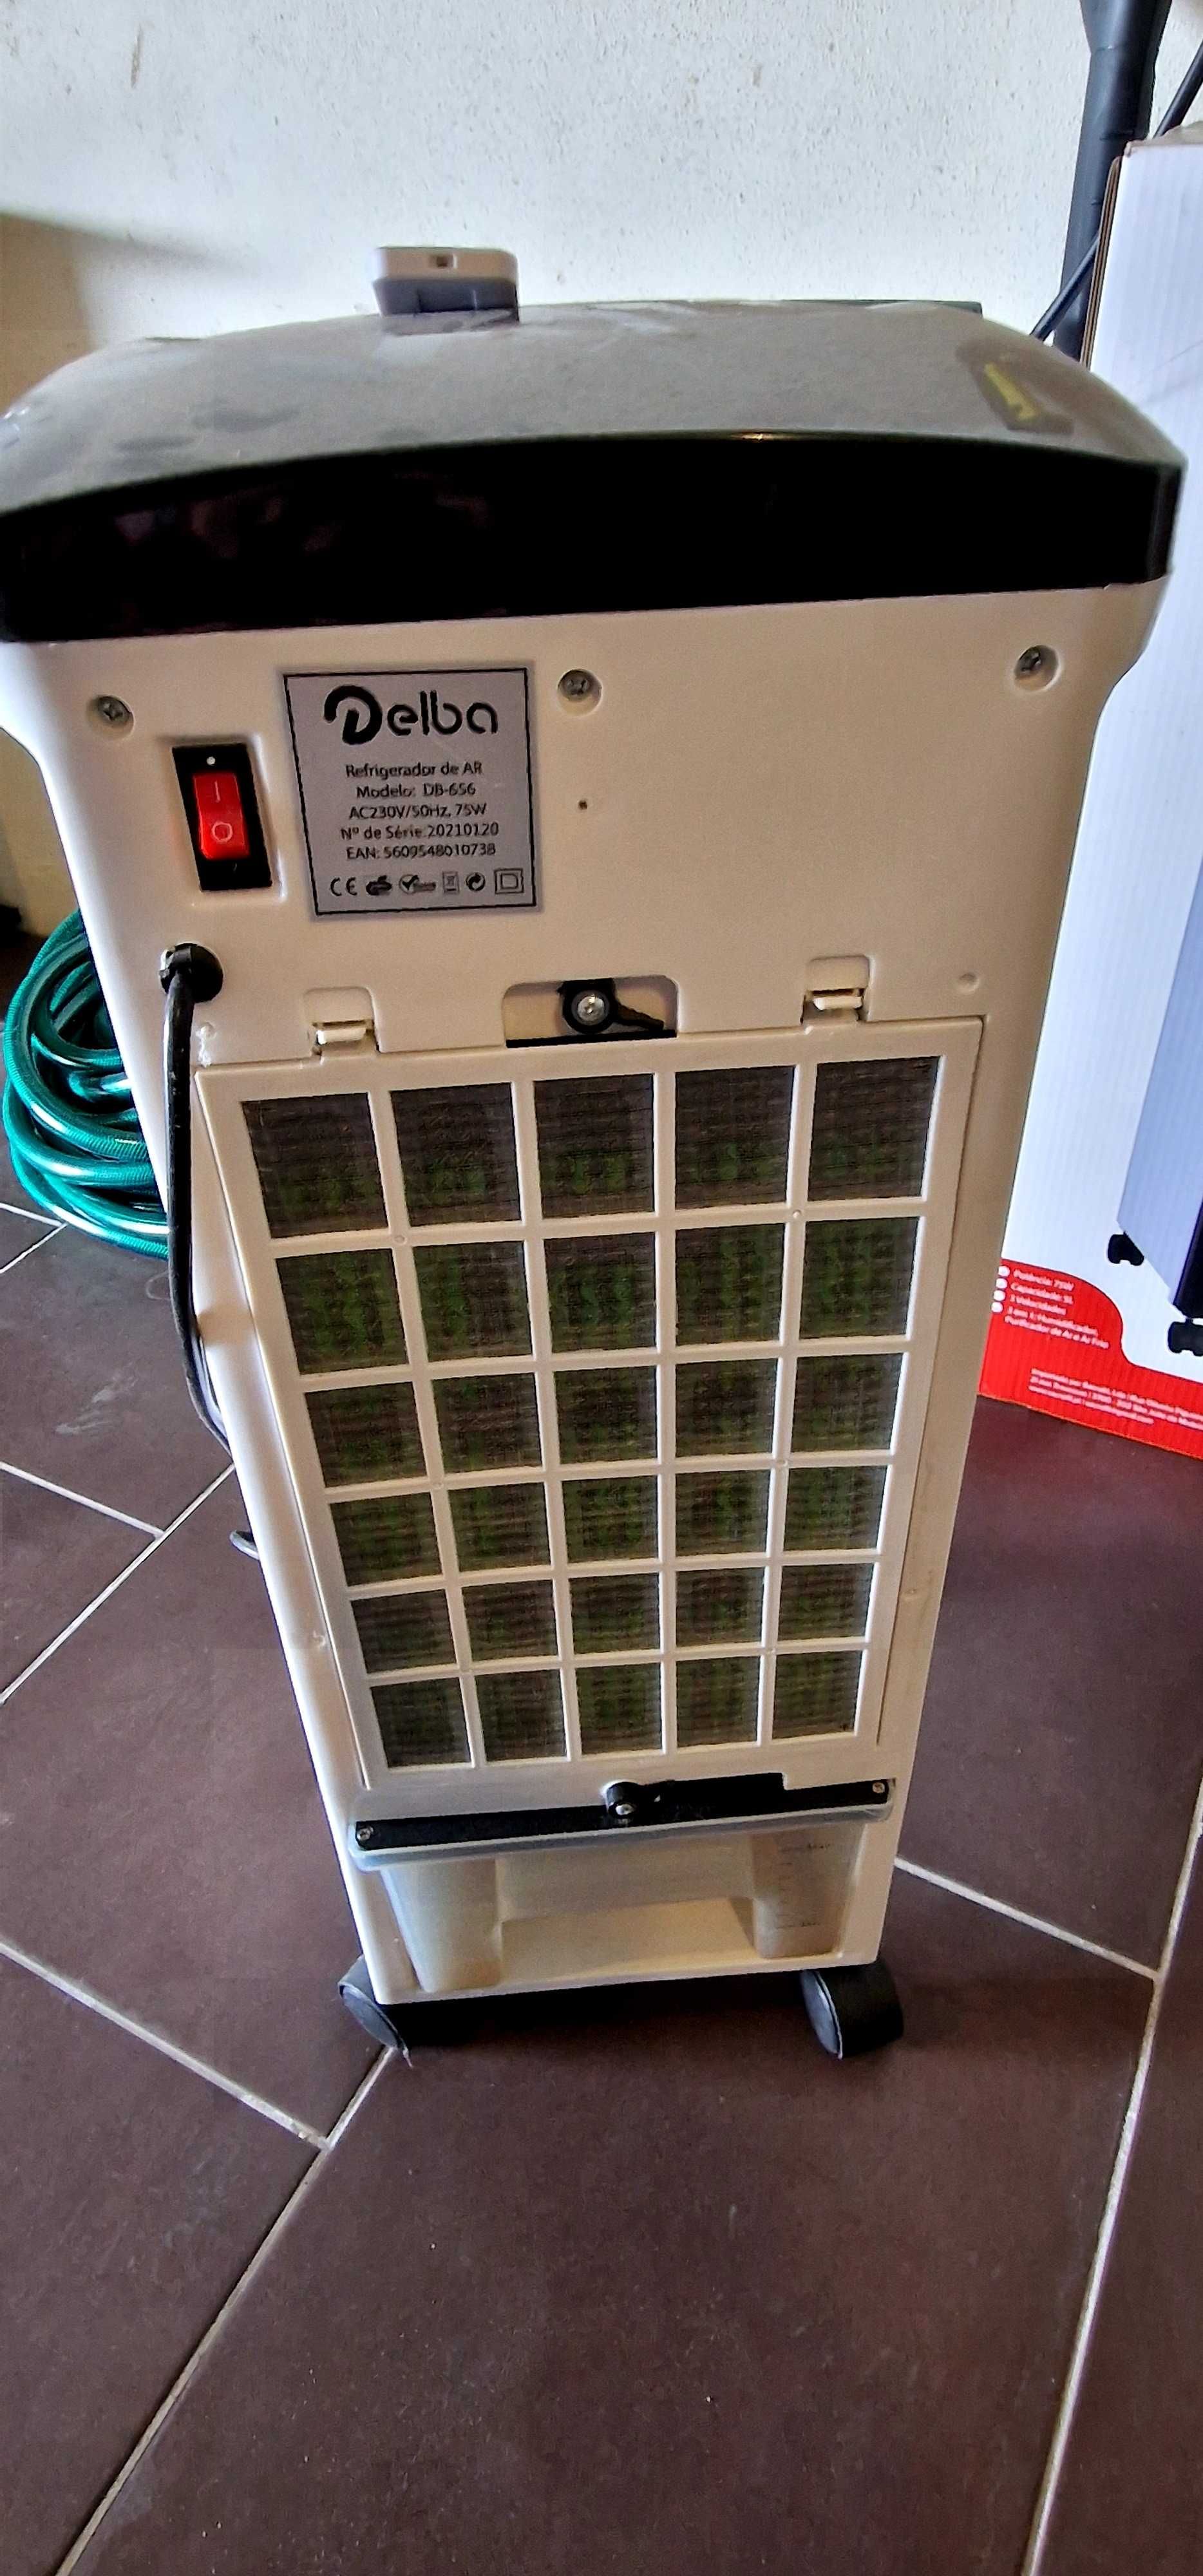 Refrigerador só foi usado um verão, ja esta há muito tempo arrumado.